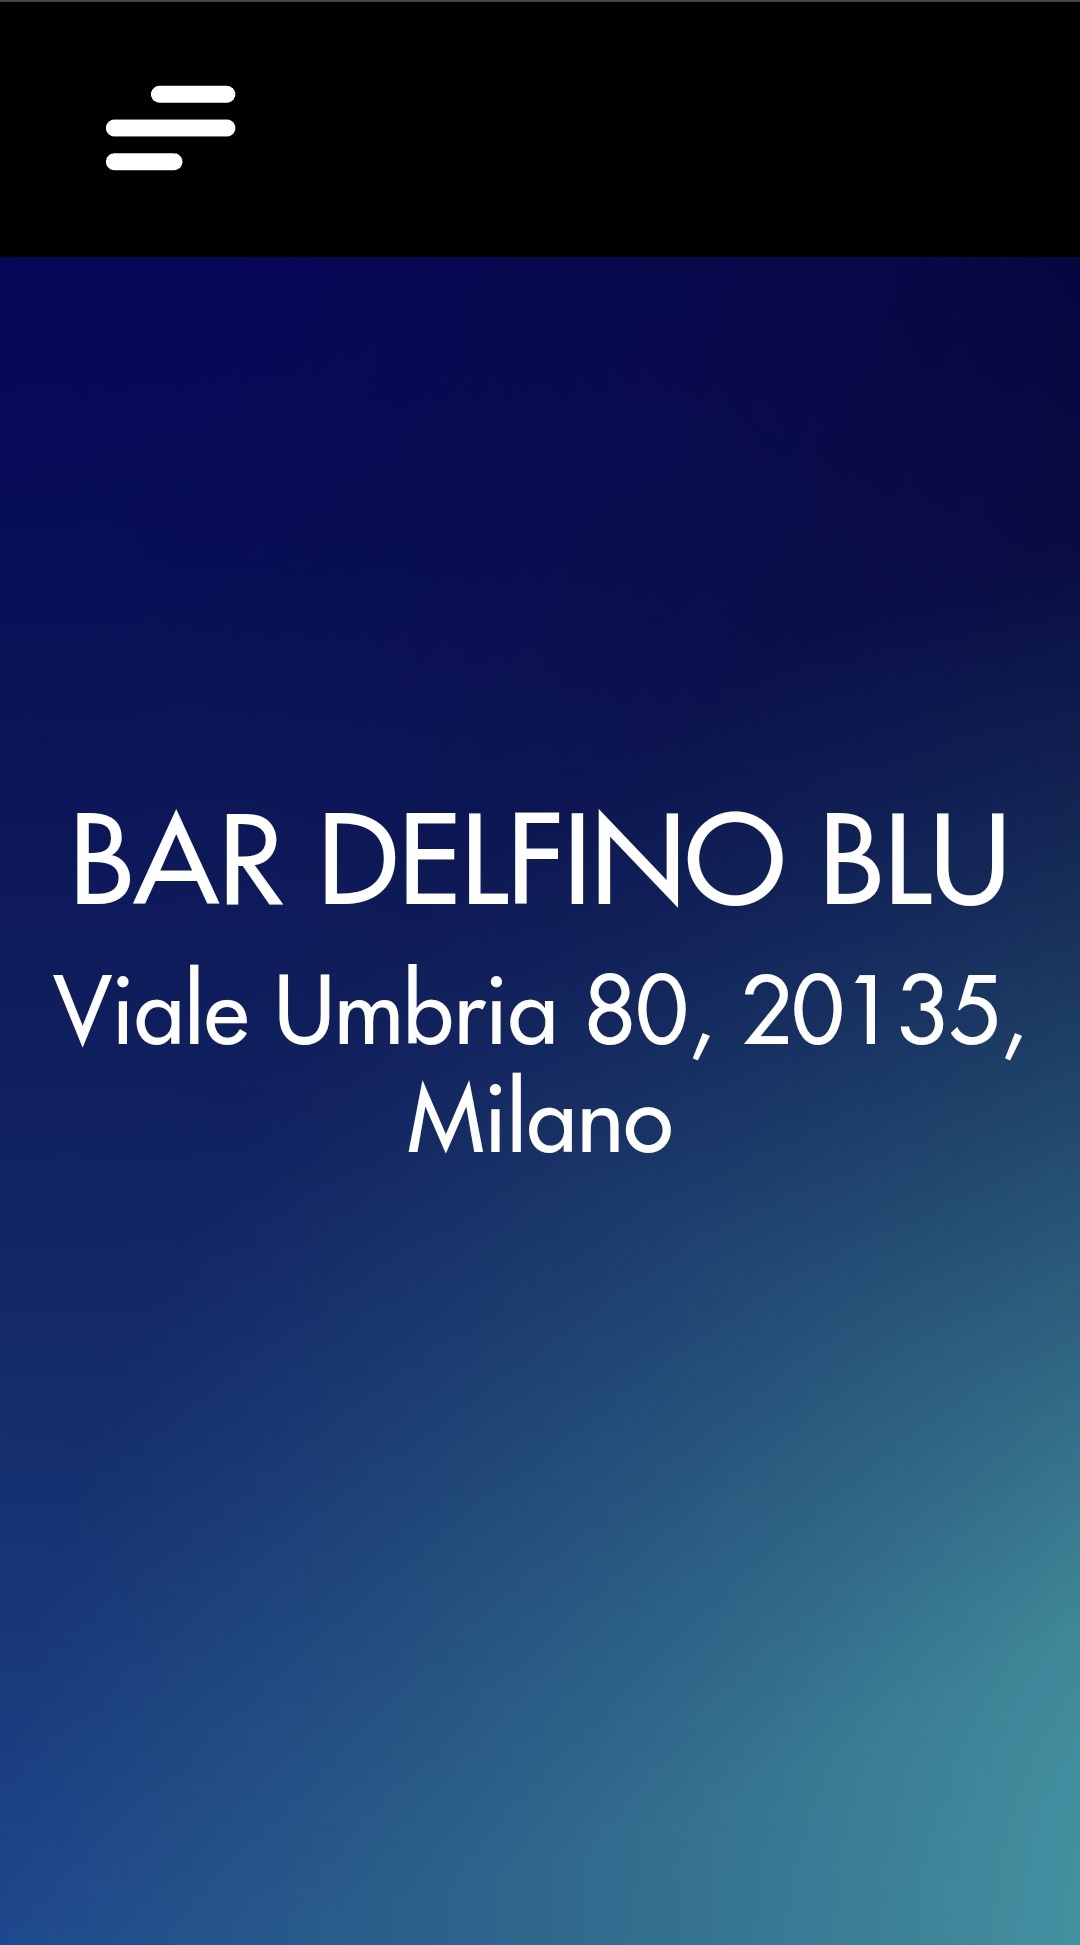 Image of Bar Delfino Blu's website